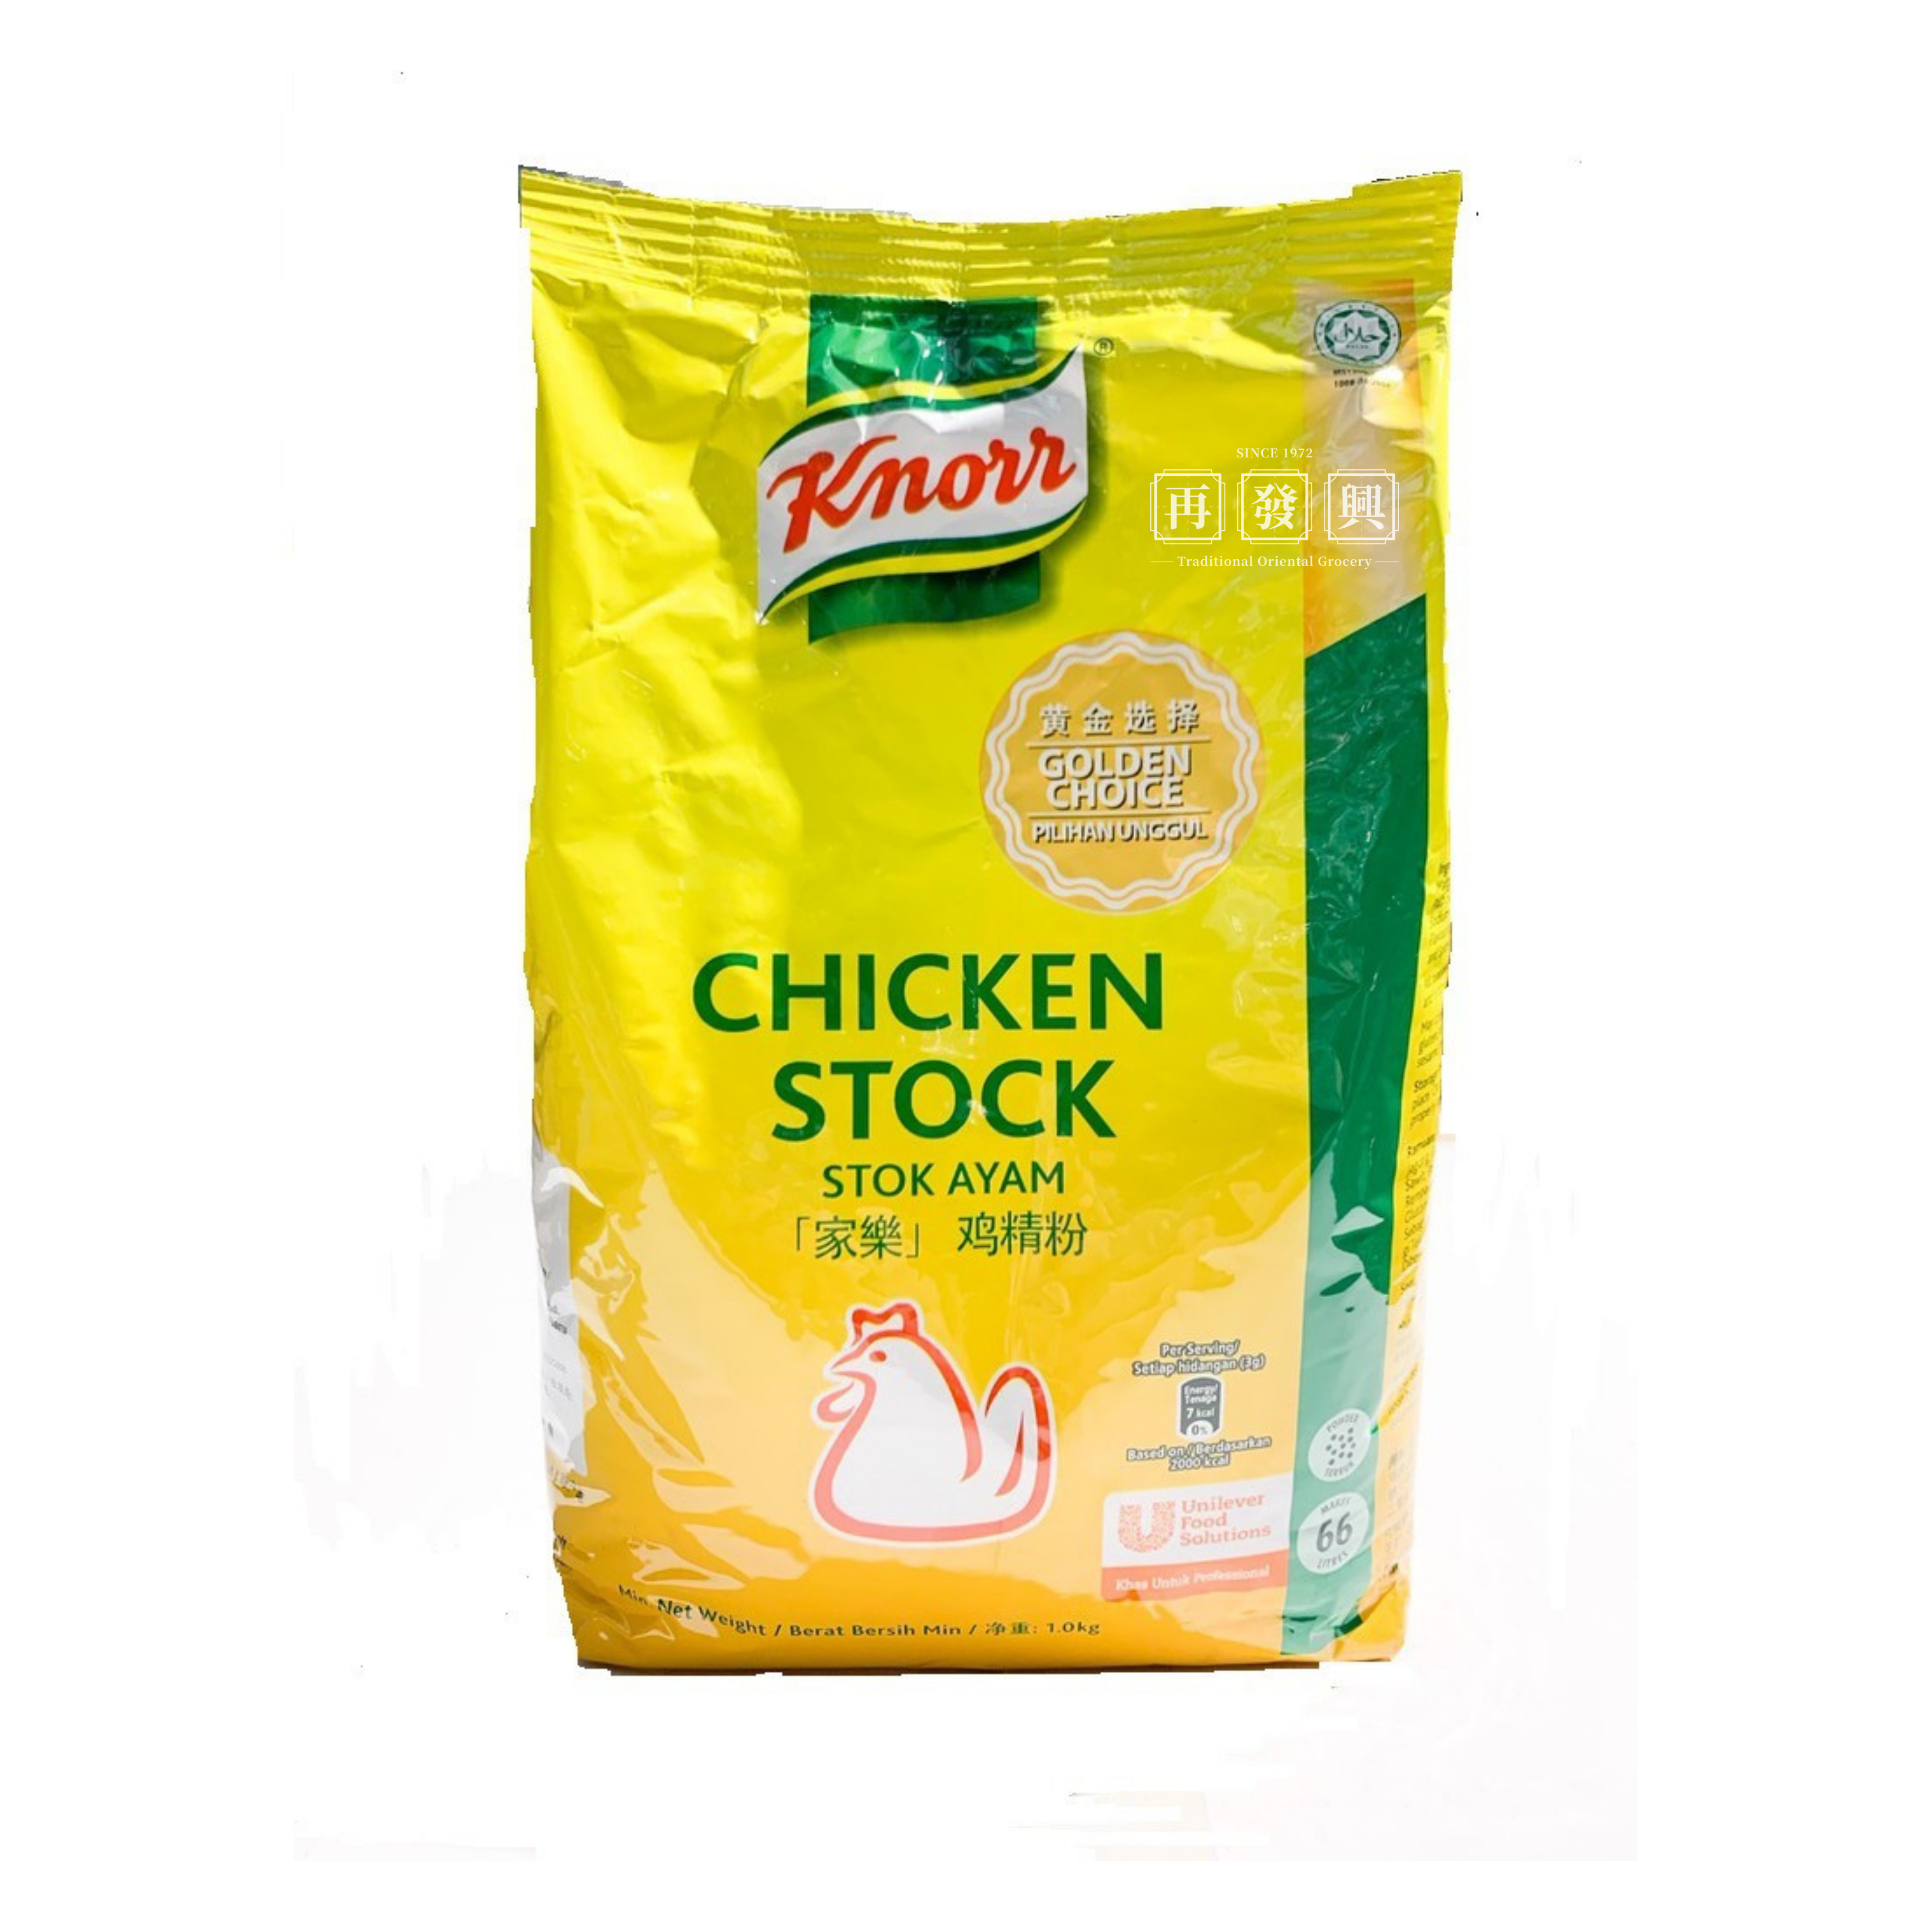 Knorr Chicken Stock 1kg